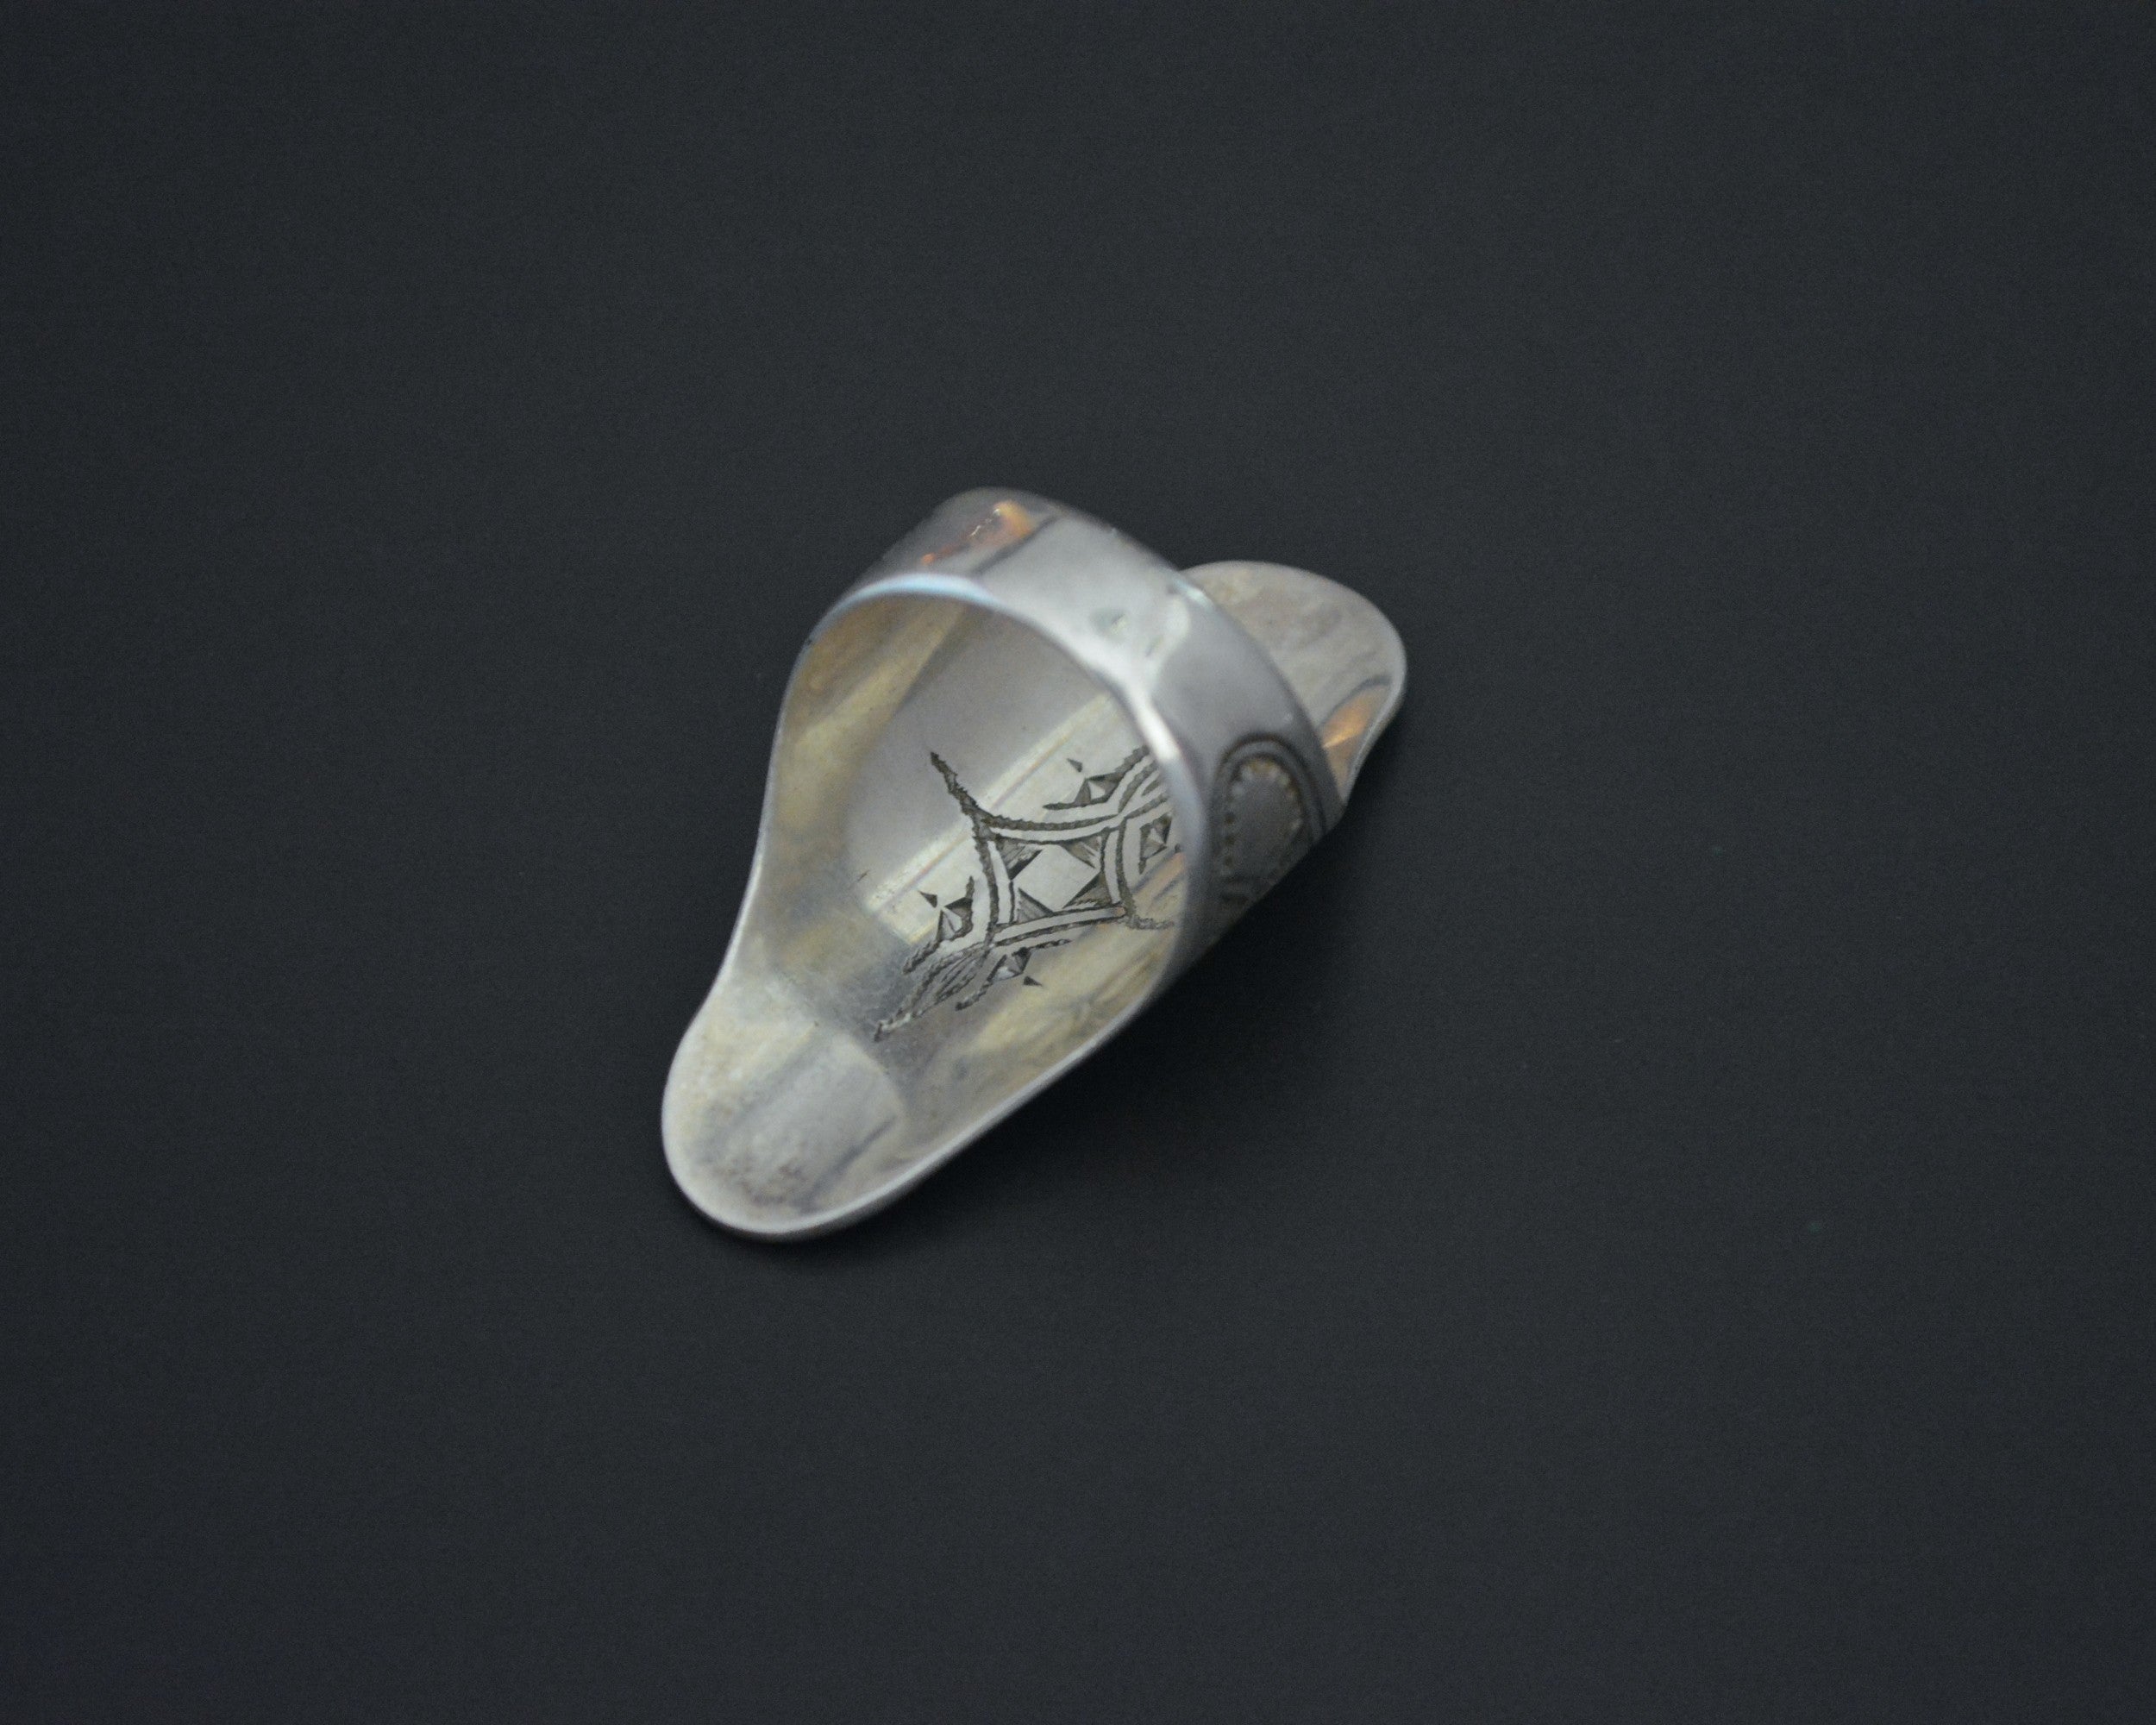 Tuareg Silver Ring - Size 10.5